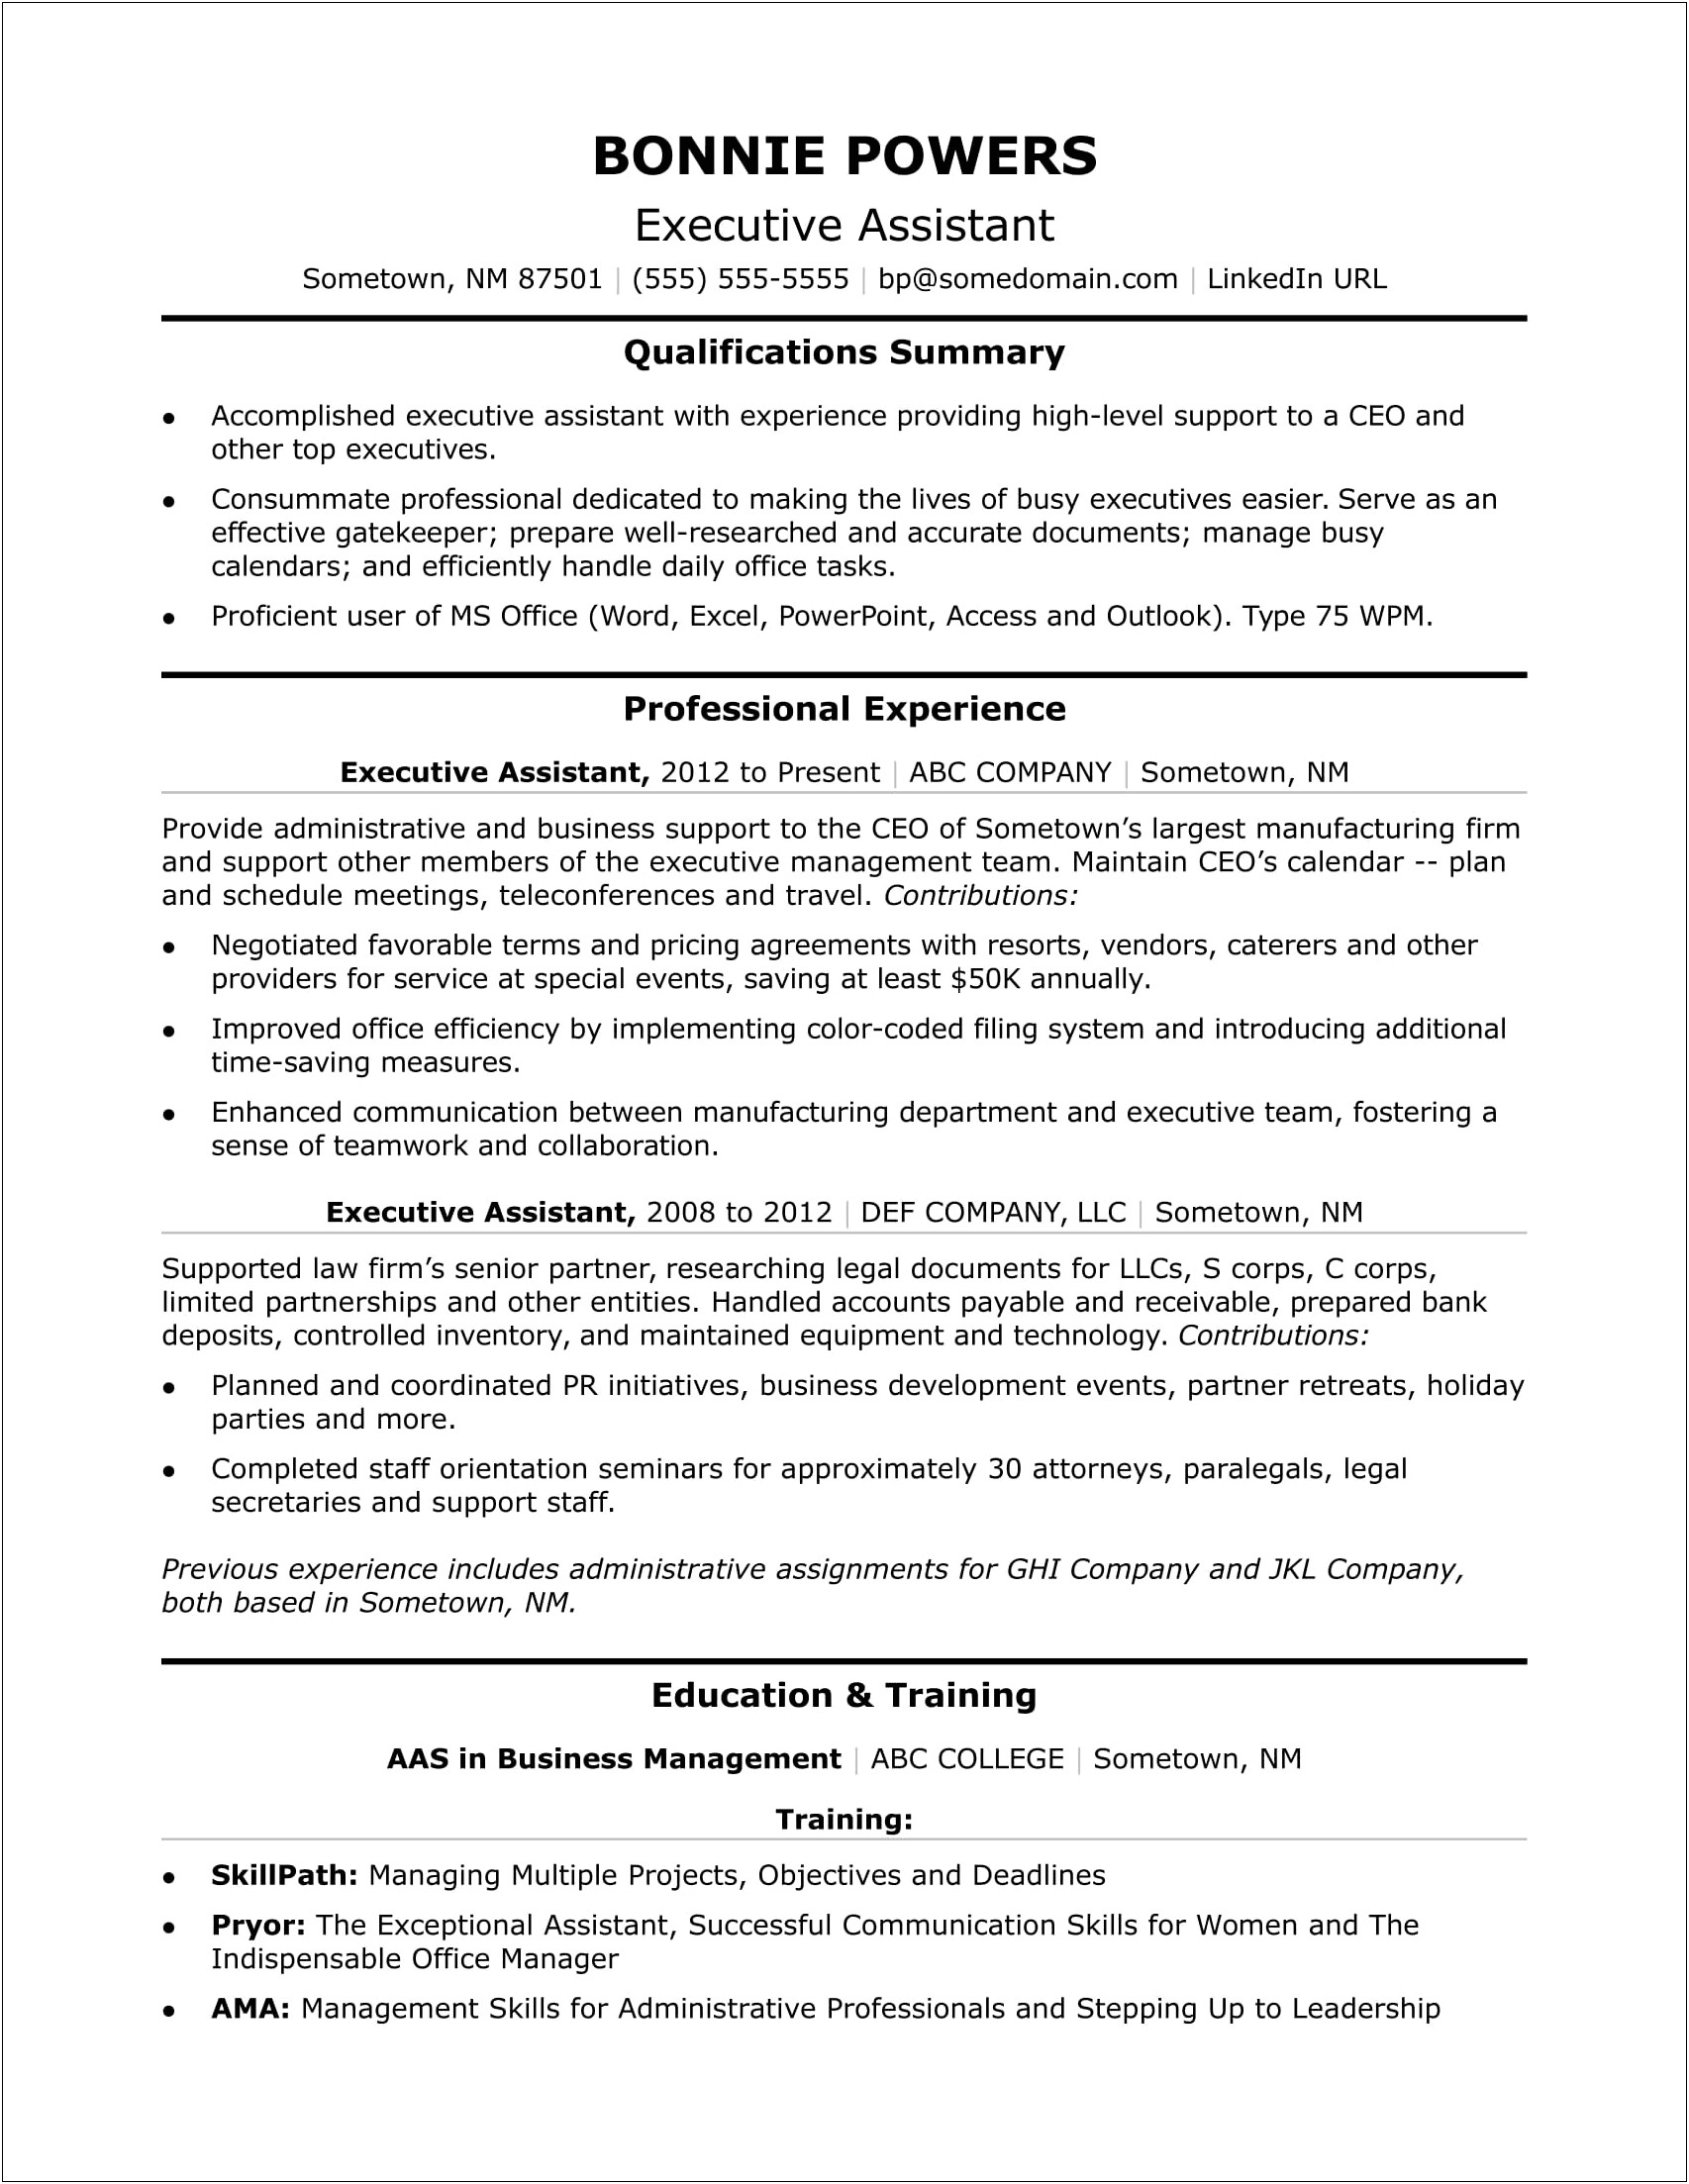 Resume Objectives For Legal Secretary